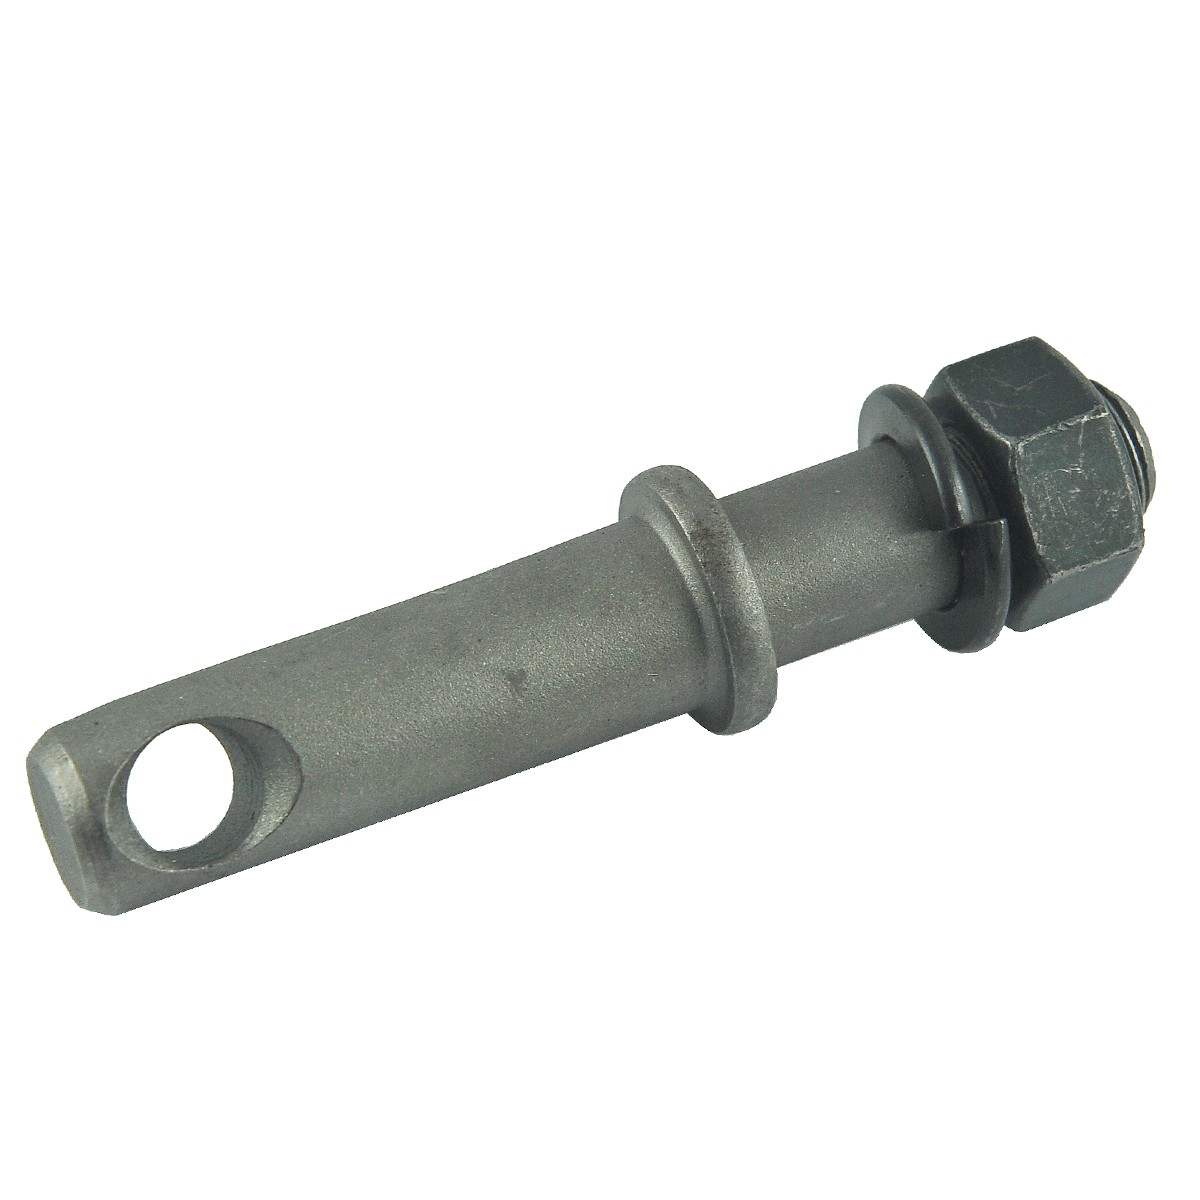 Three-point linkage pin / M16 / 19 x 110 mm / Kubota L1802/L2201/L2600/L2808/L3408 / 30442-37690 / 5-25-102-21